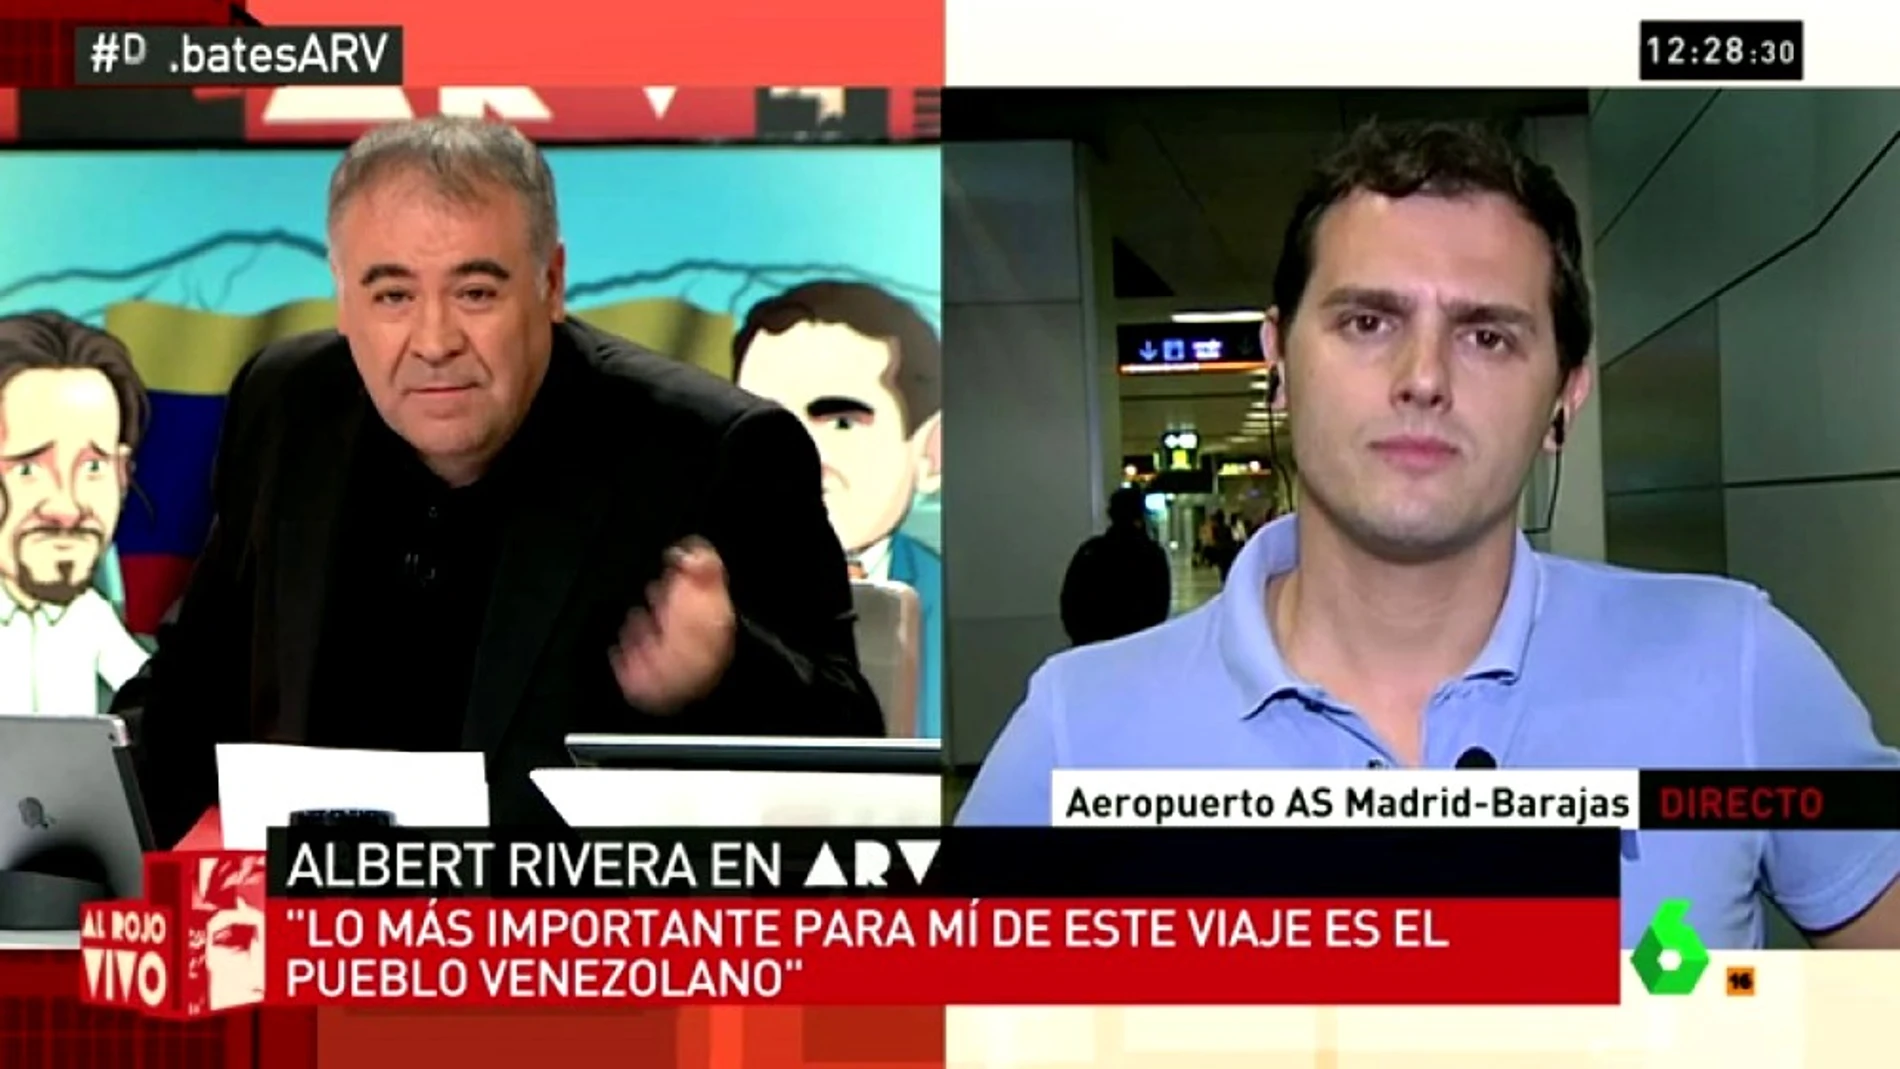 Albert Rivera en ARV